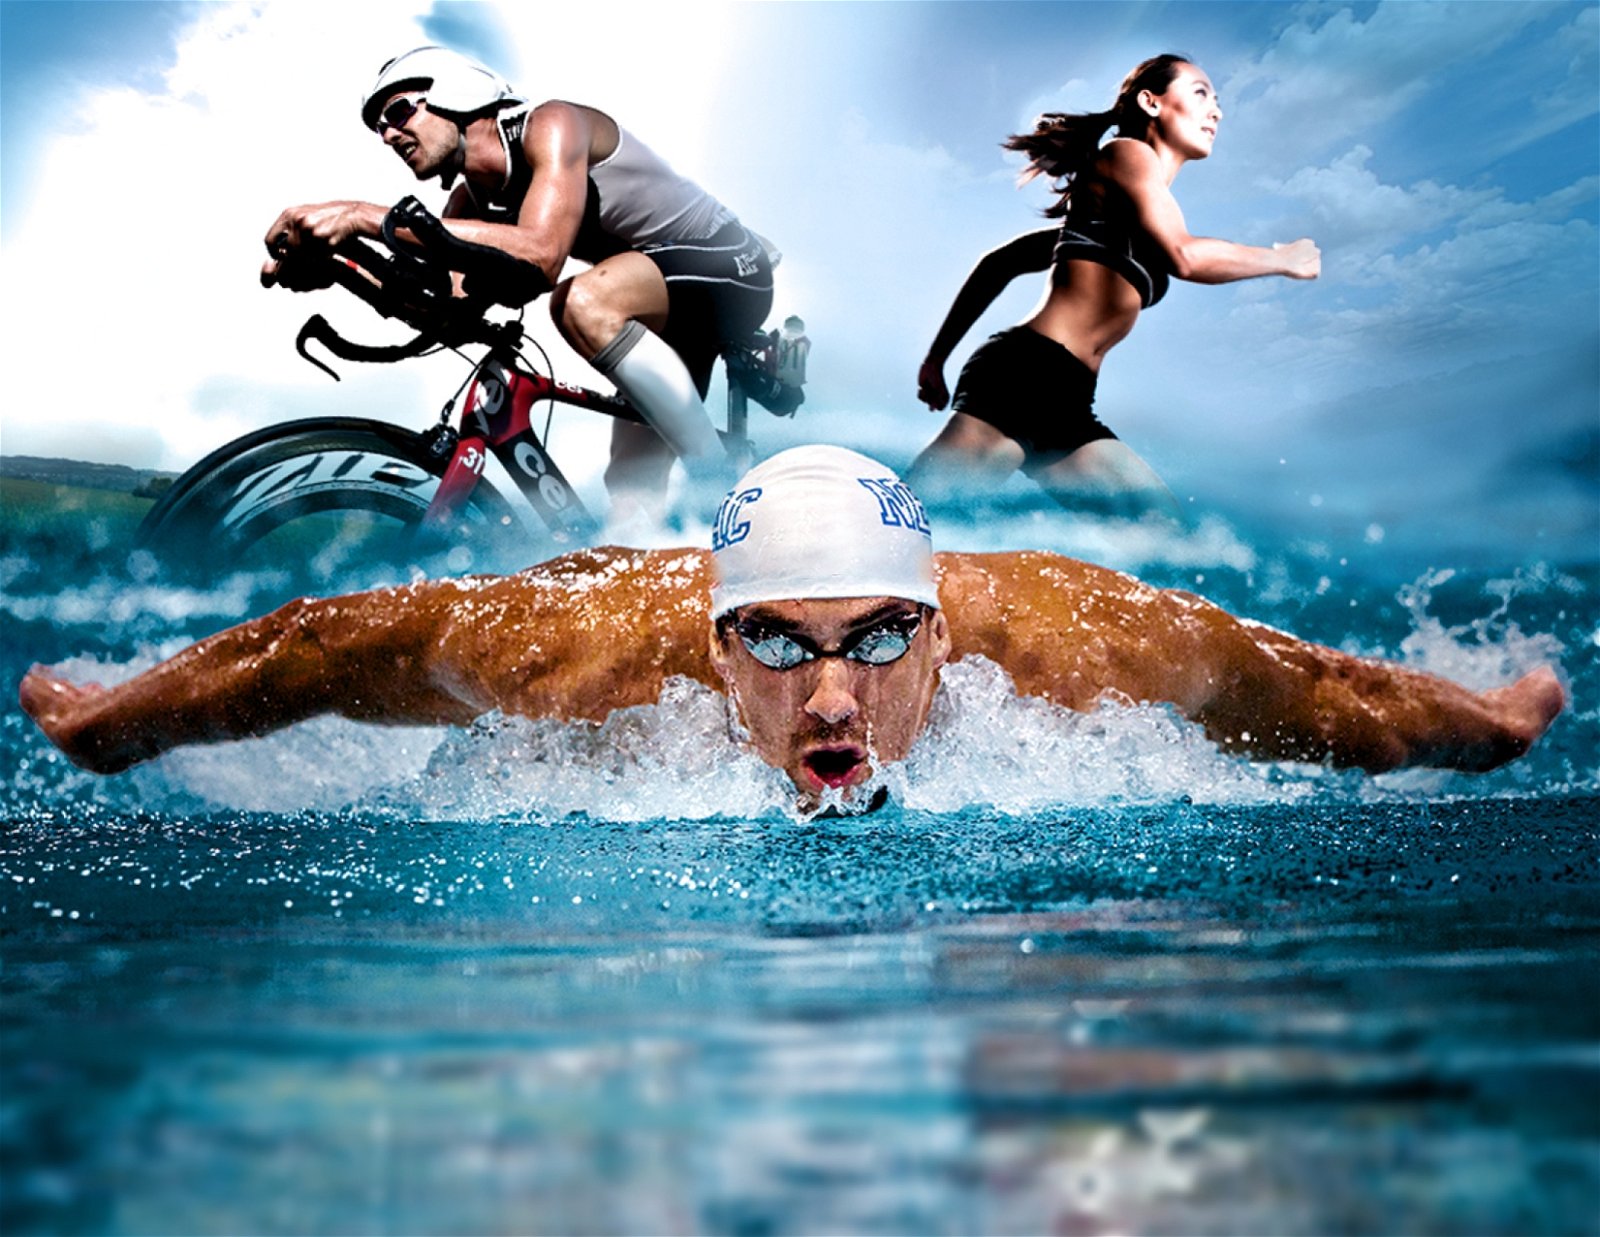 铁人三项是由游泳、骑脚车和马拉松三项运动组成的比赛。运动员需按顺序一气呵完成三项运动，转换项目时更换衣服和鞋的时间亦计算在比赛时间之内。